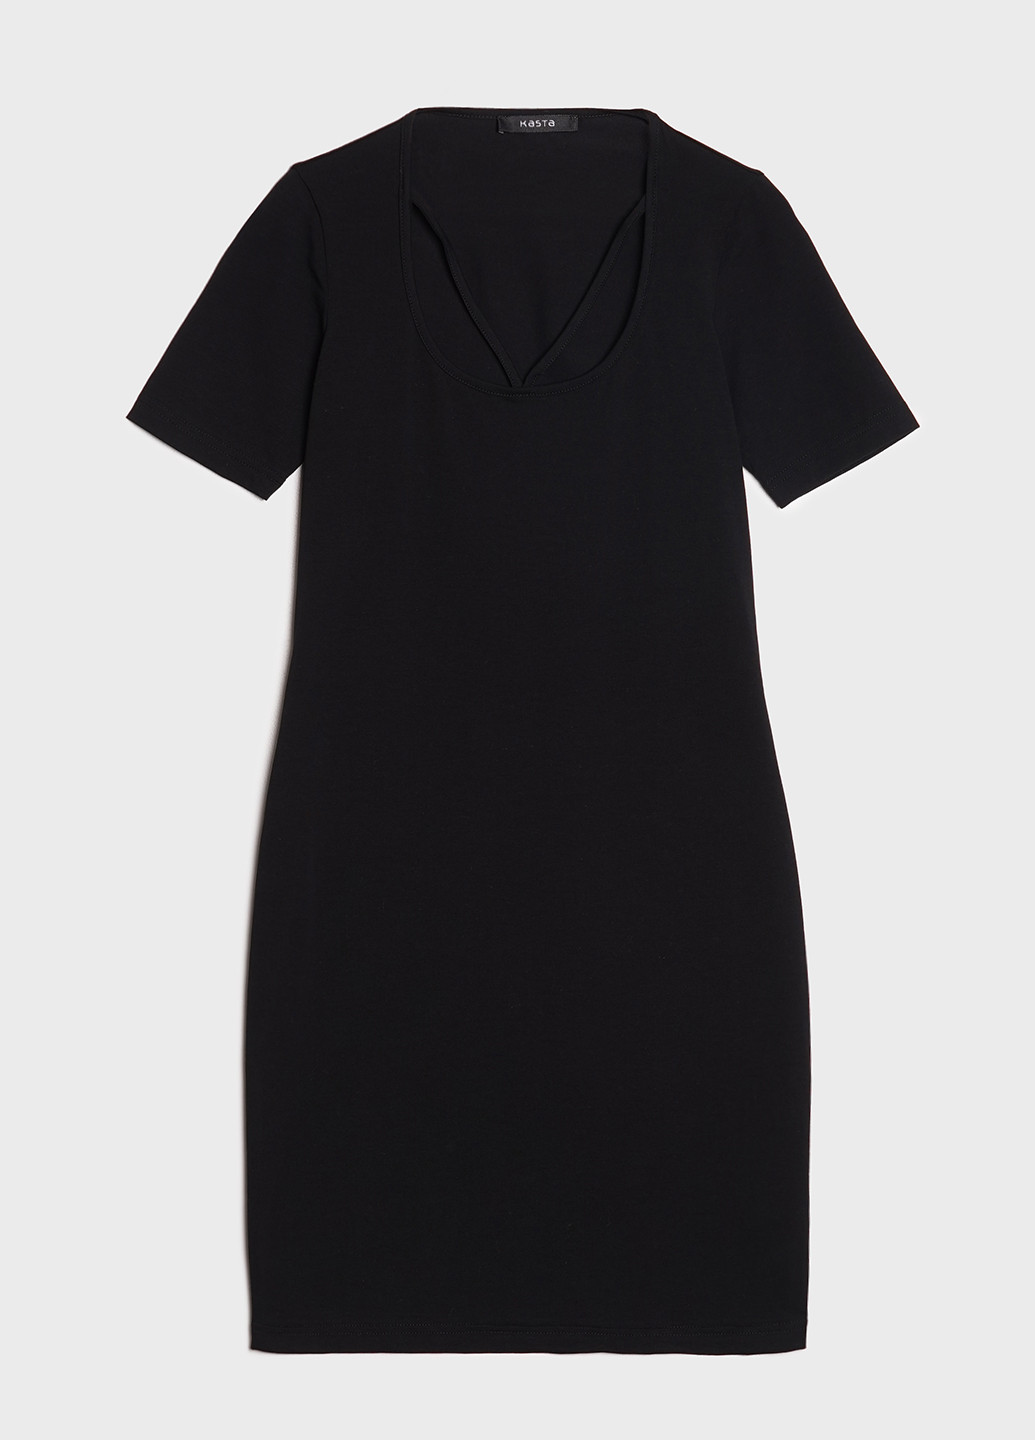 Черное кэжуал платье женское трикотажное короткое прилегающее с коротким рукавом платье-футболка KASTA design однотонное